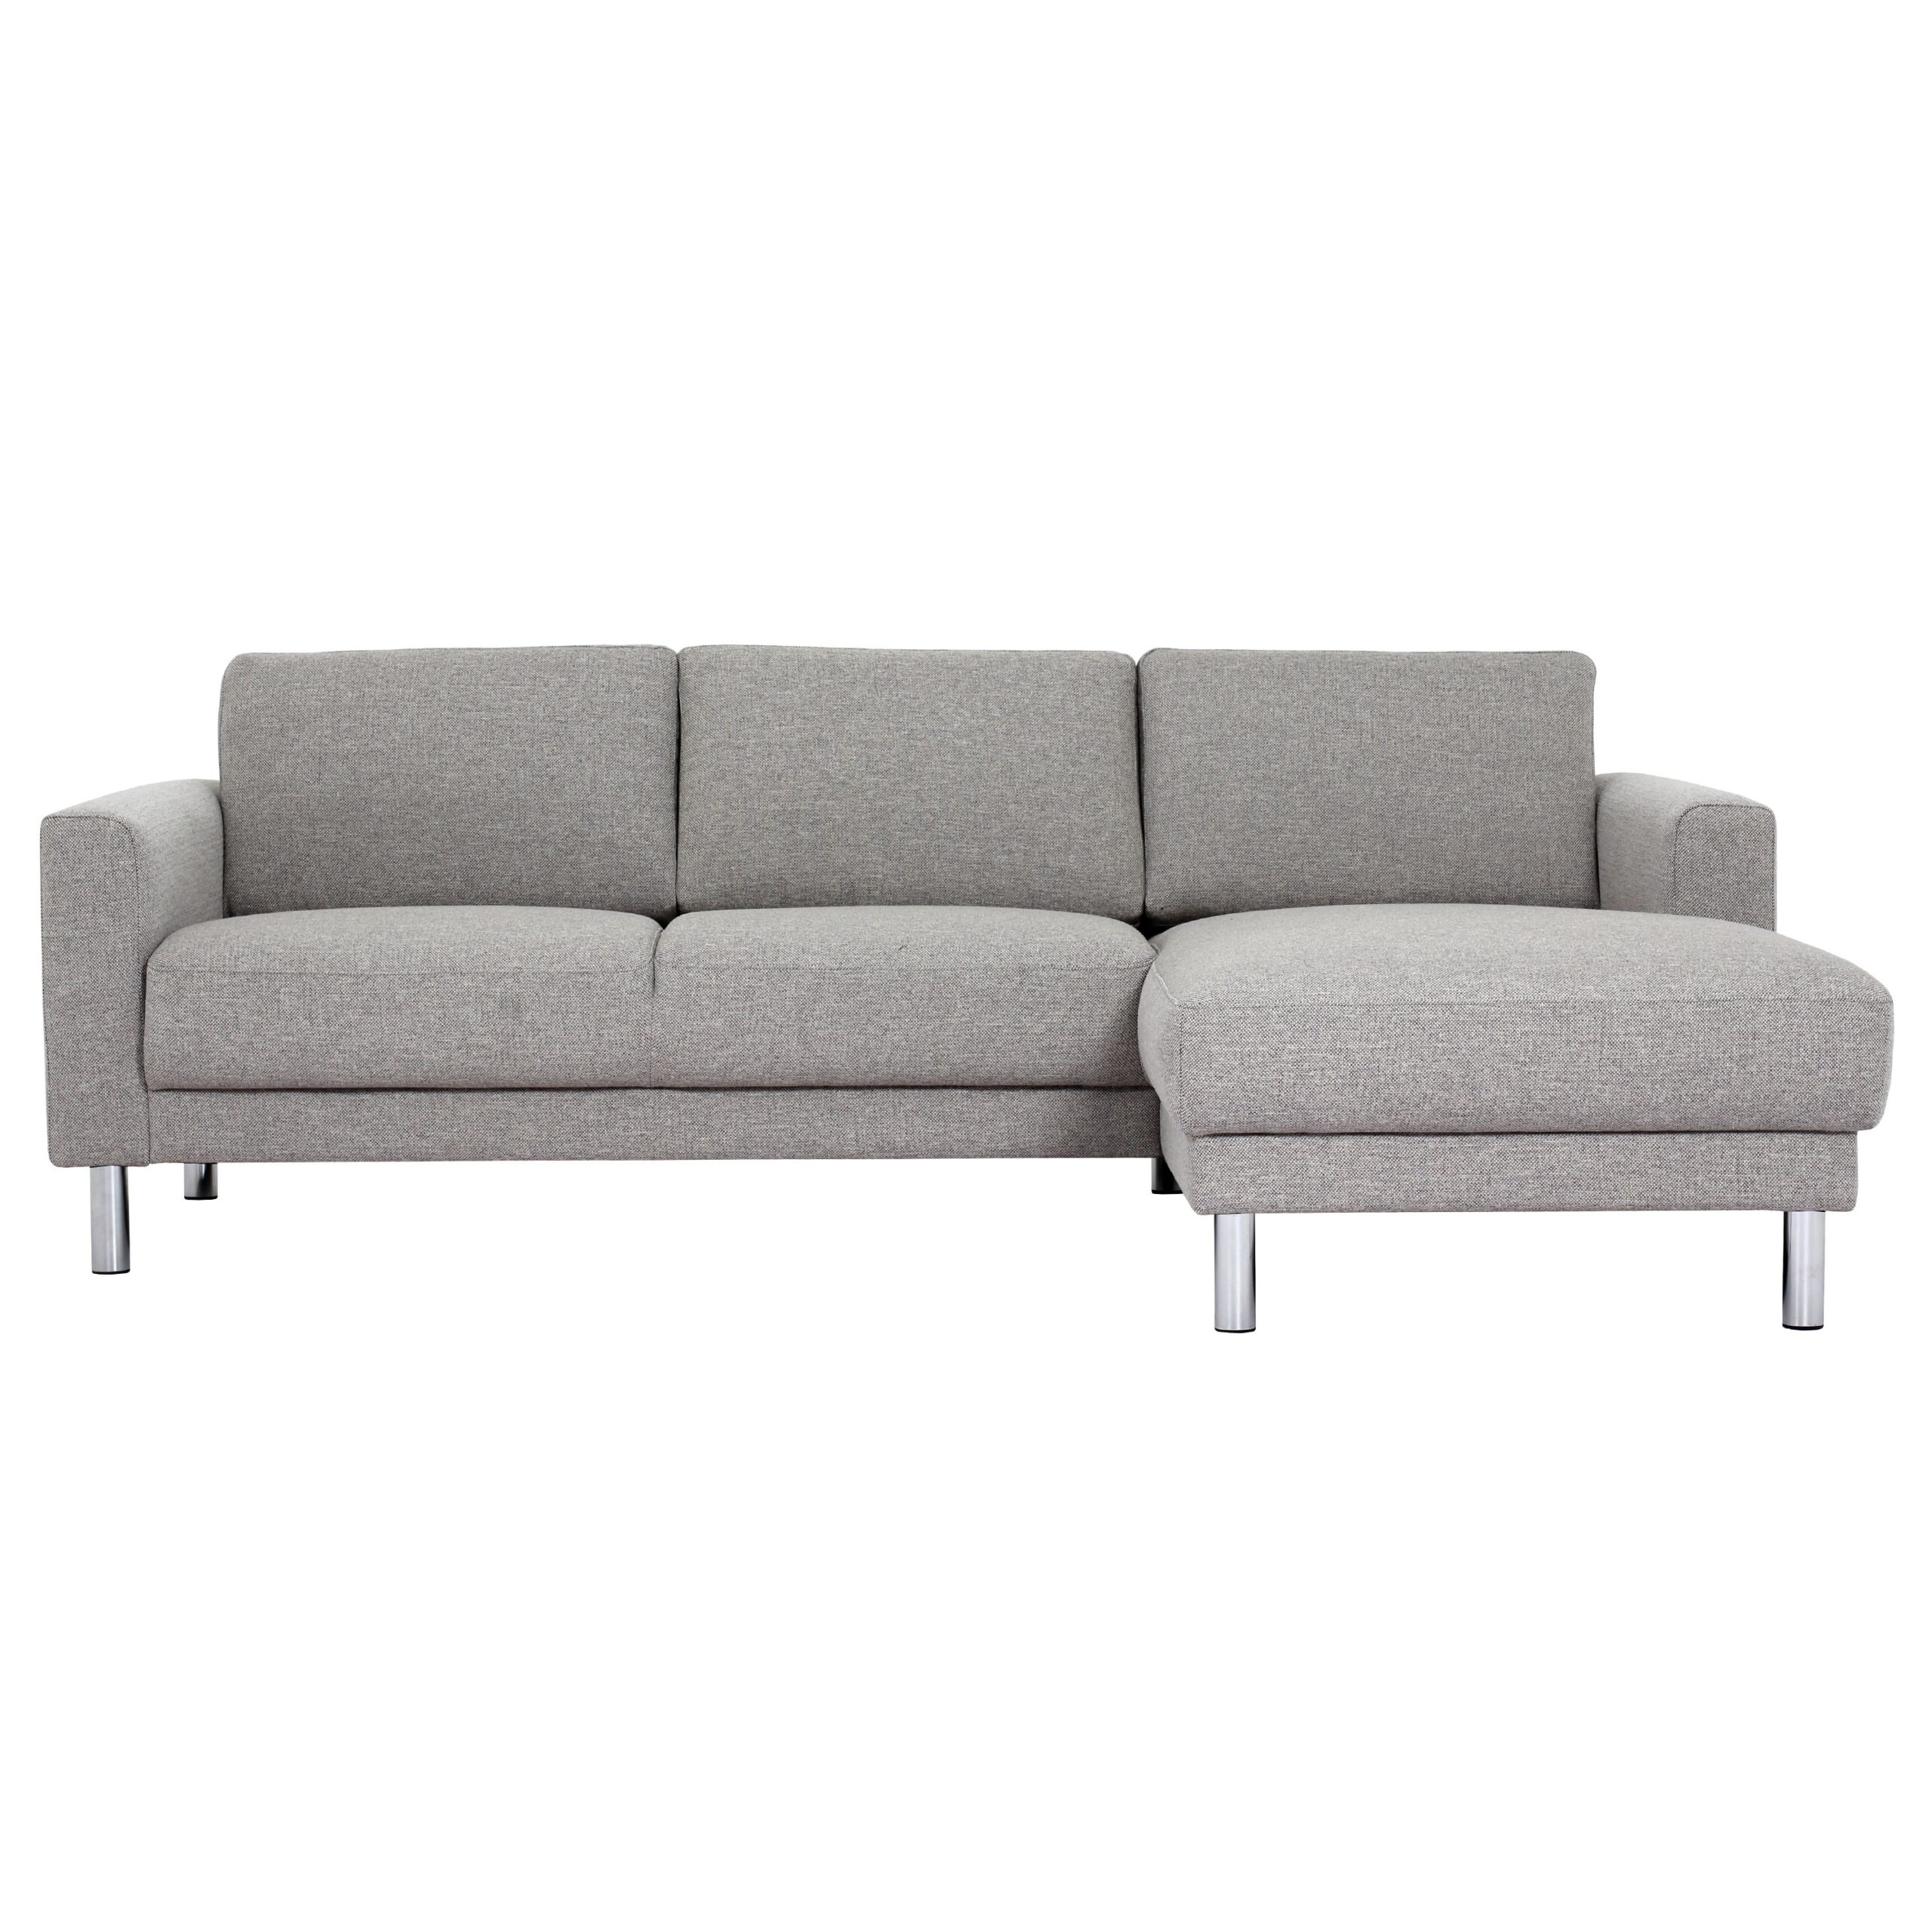 Mex Chaiselongue Sofa (Rh)